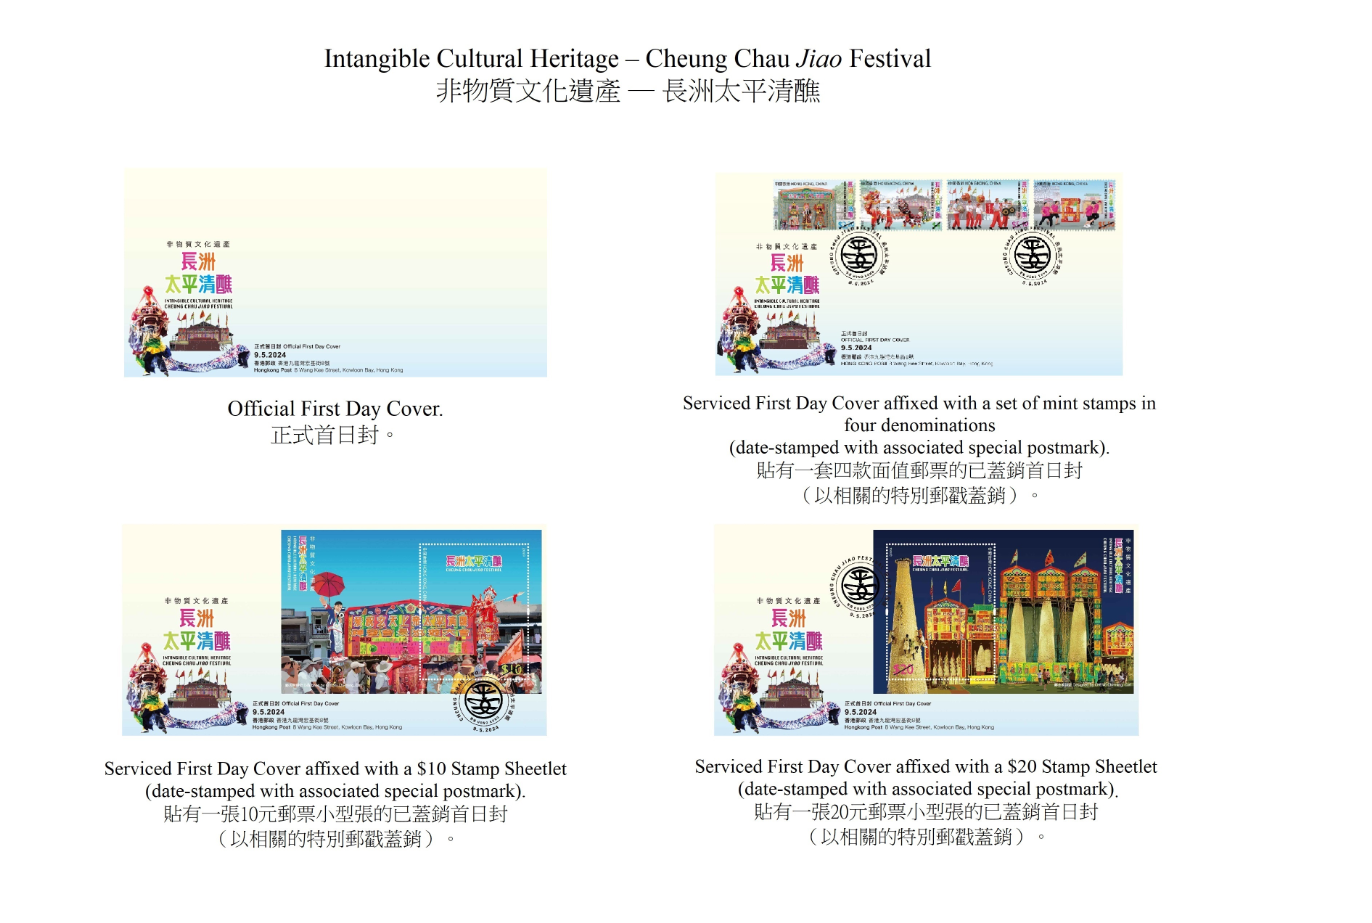 香港邮政五月九日（星期四）发行以「非物质文化遗产—长洲太平清醮」为题的特别邮票及相关集邮品。图示首日封。